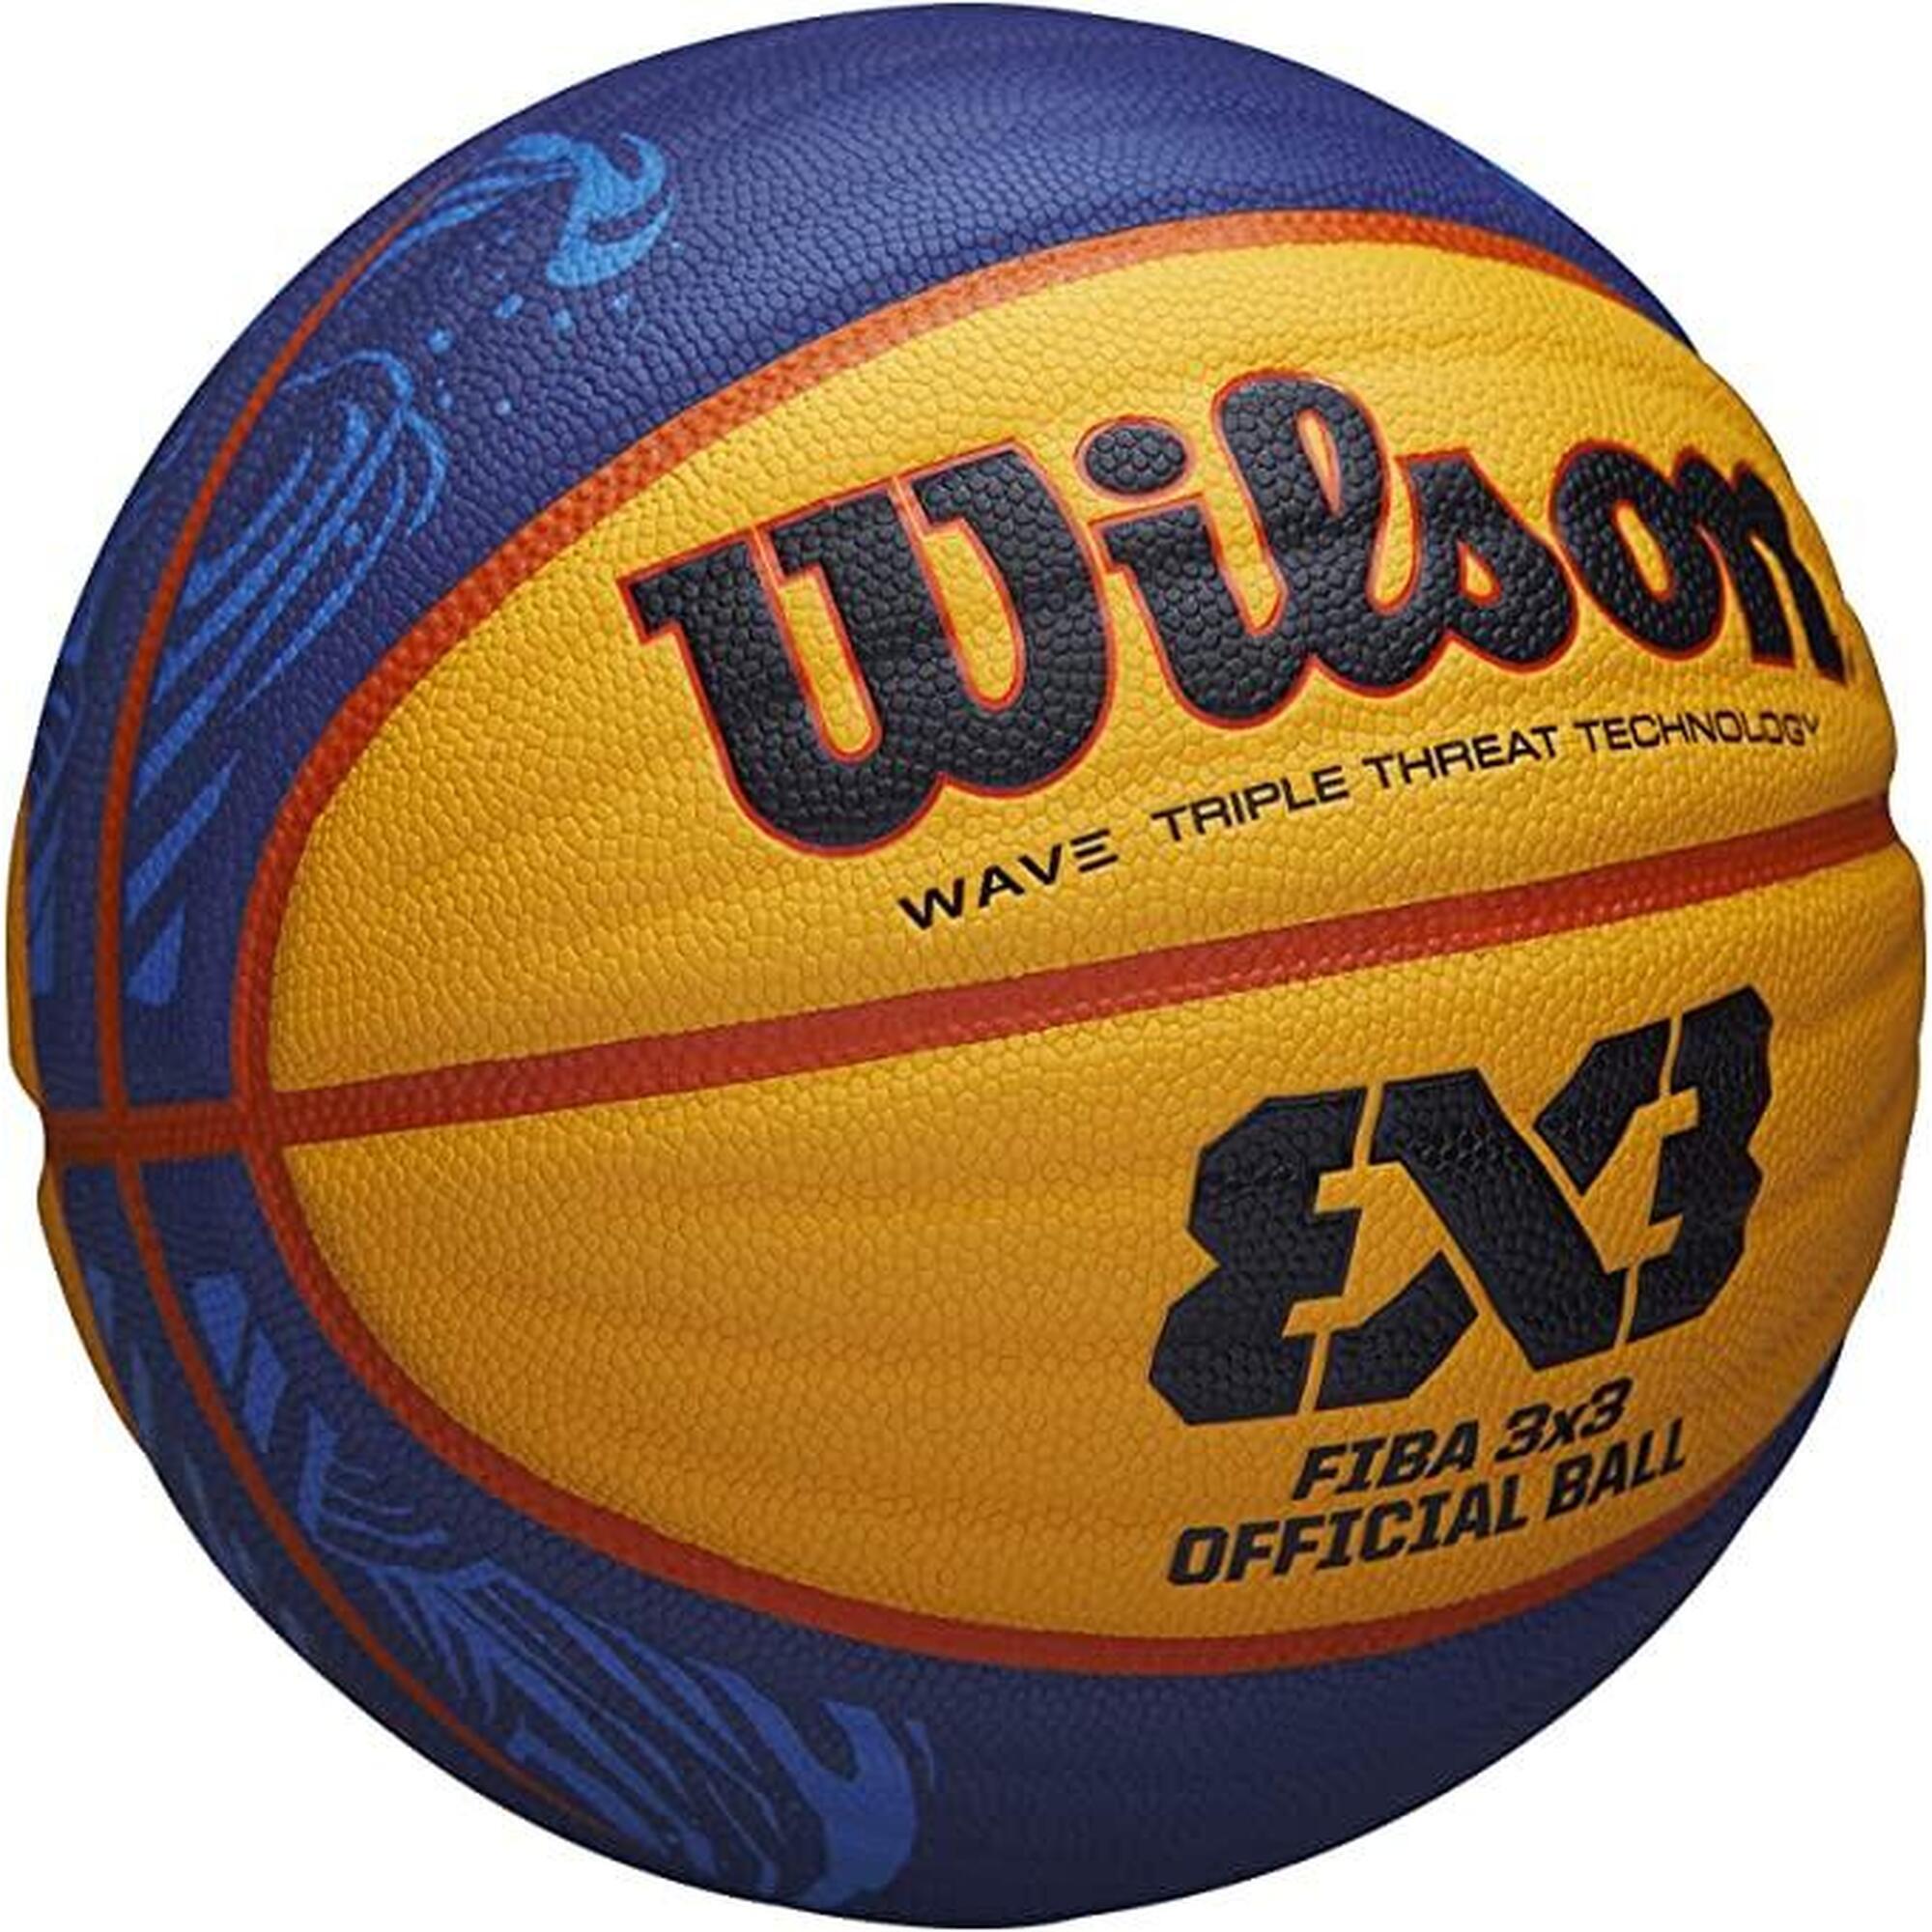 限量版 (PU) FIBA 3x3 官方比賽用6號籃球 - 藍色/黃色